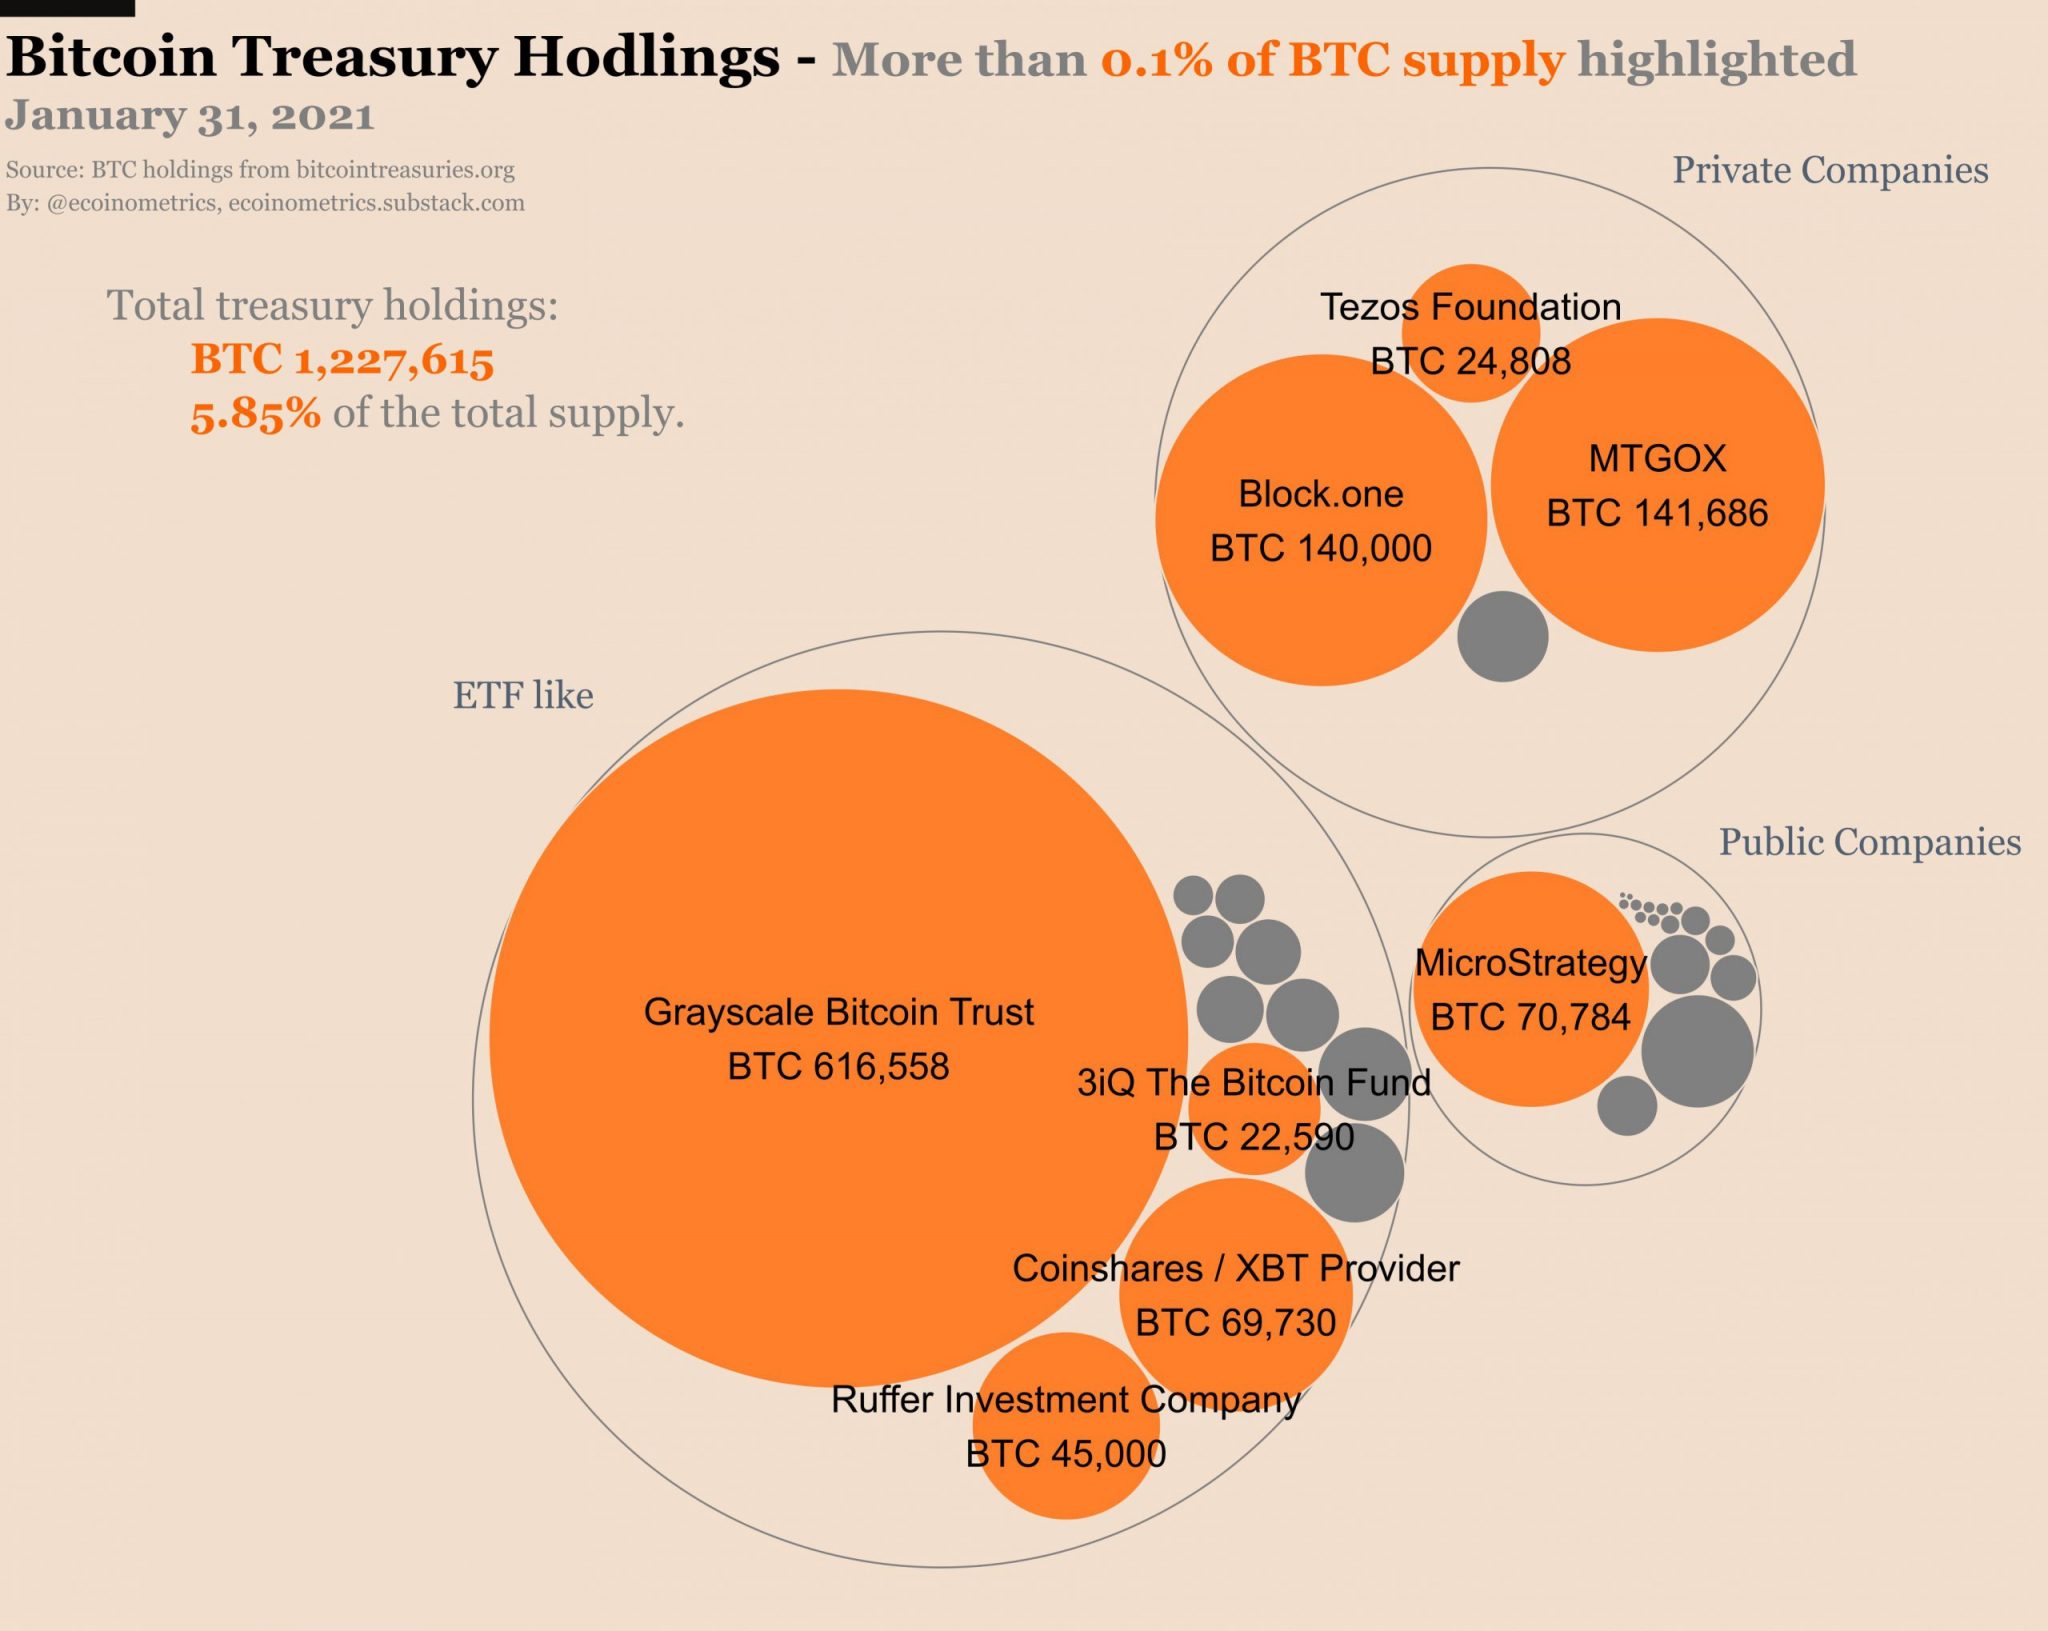 Los bonos del Tesoro ahora tienen el 5,85% del suministro de Bitcoin